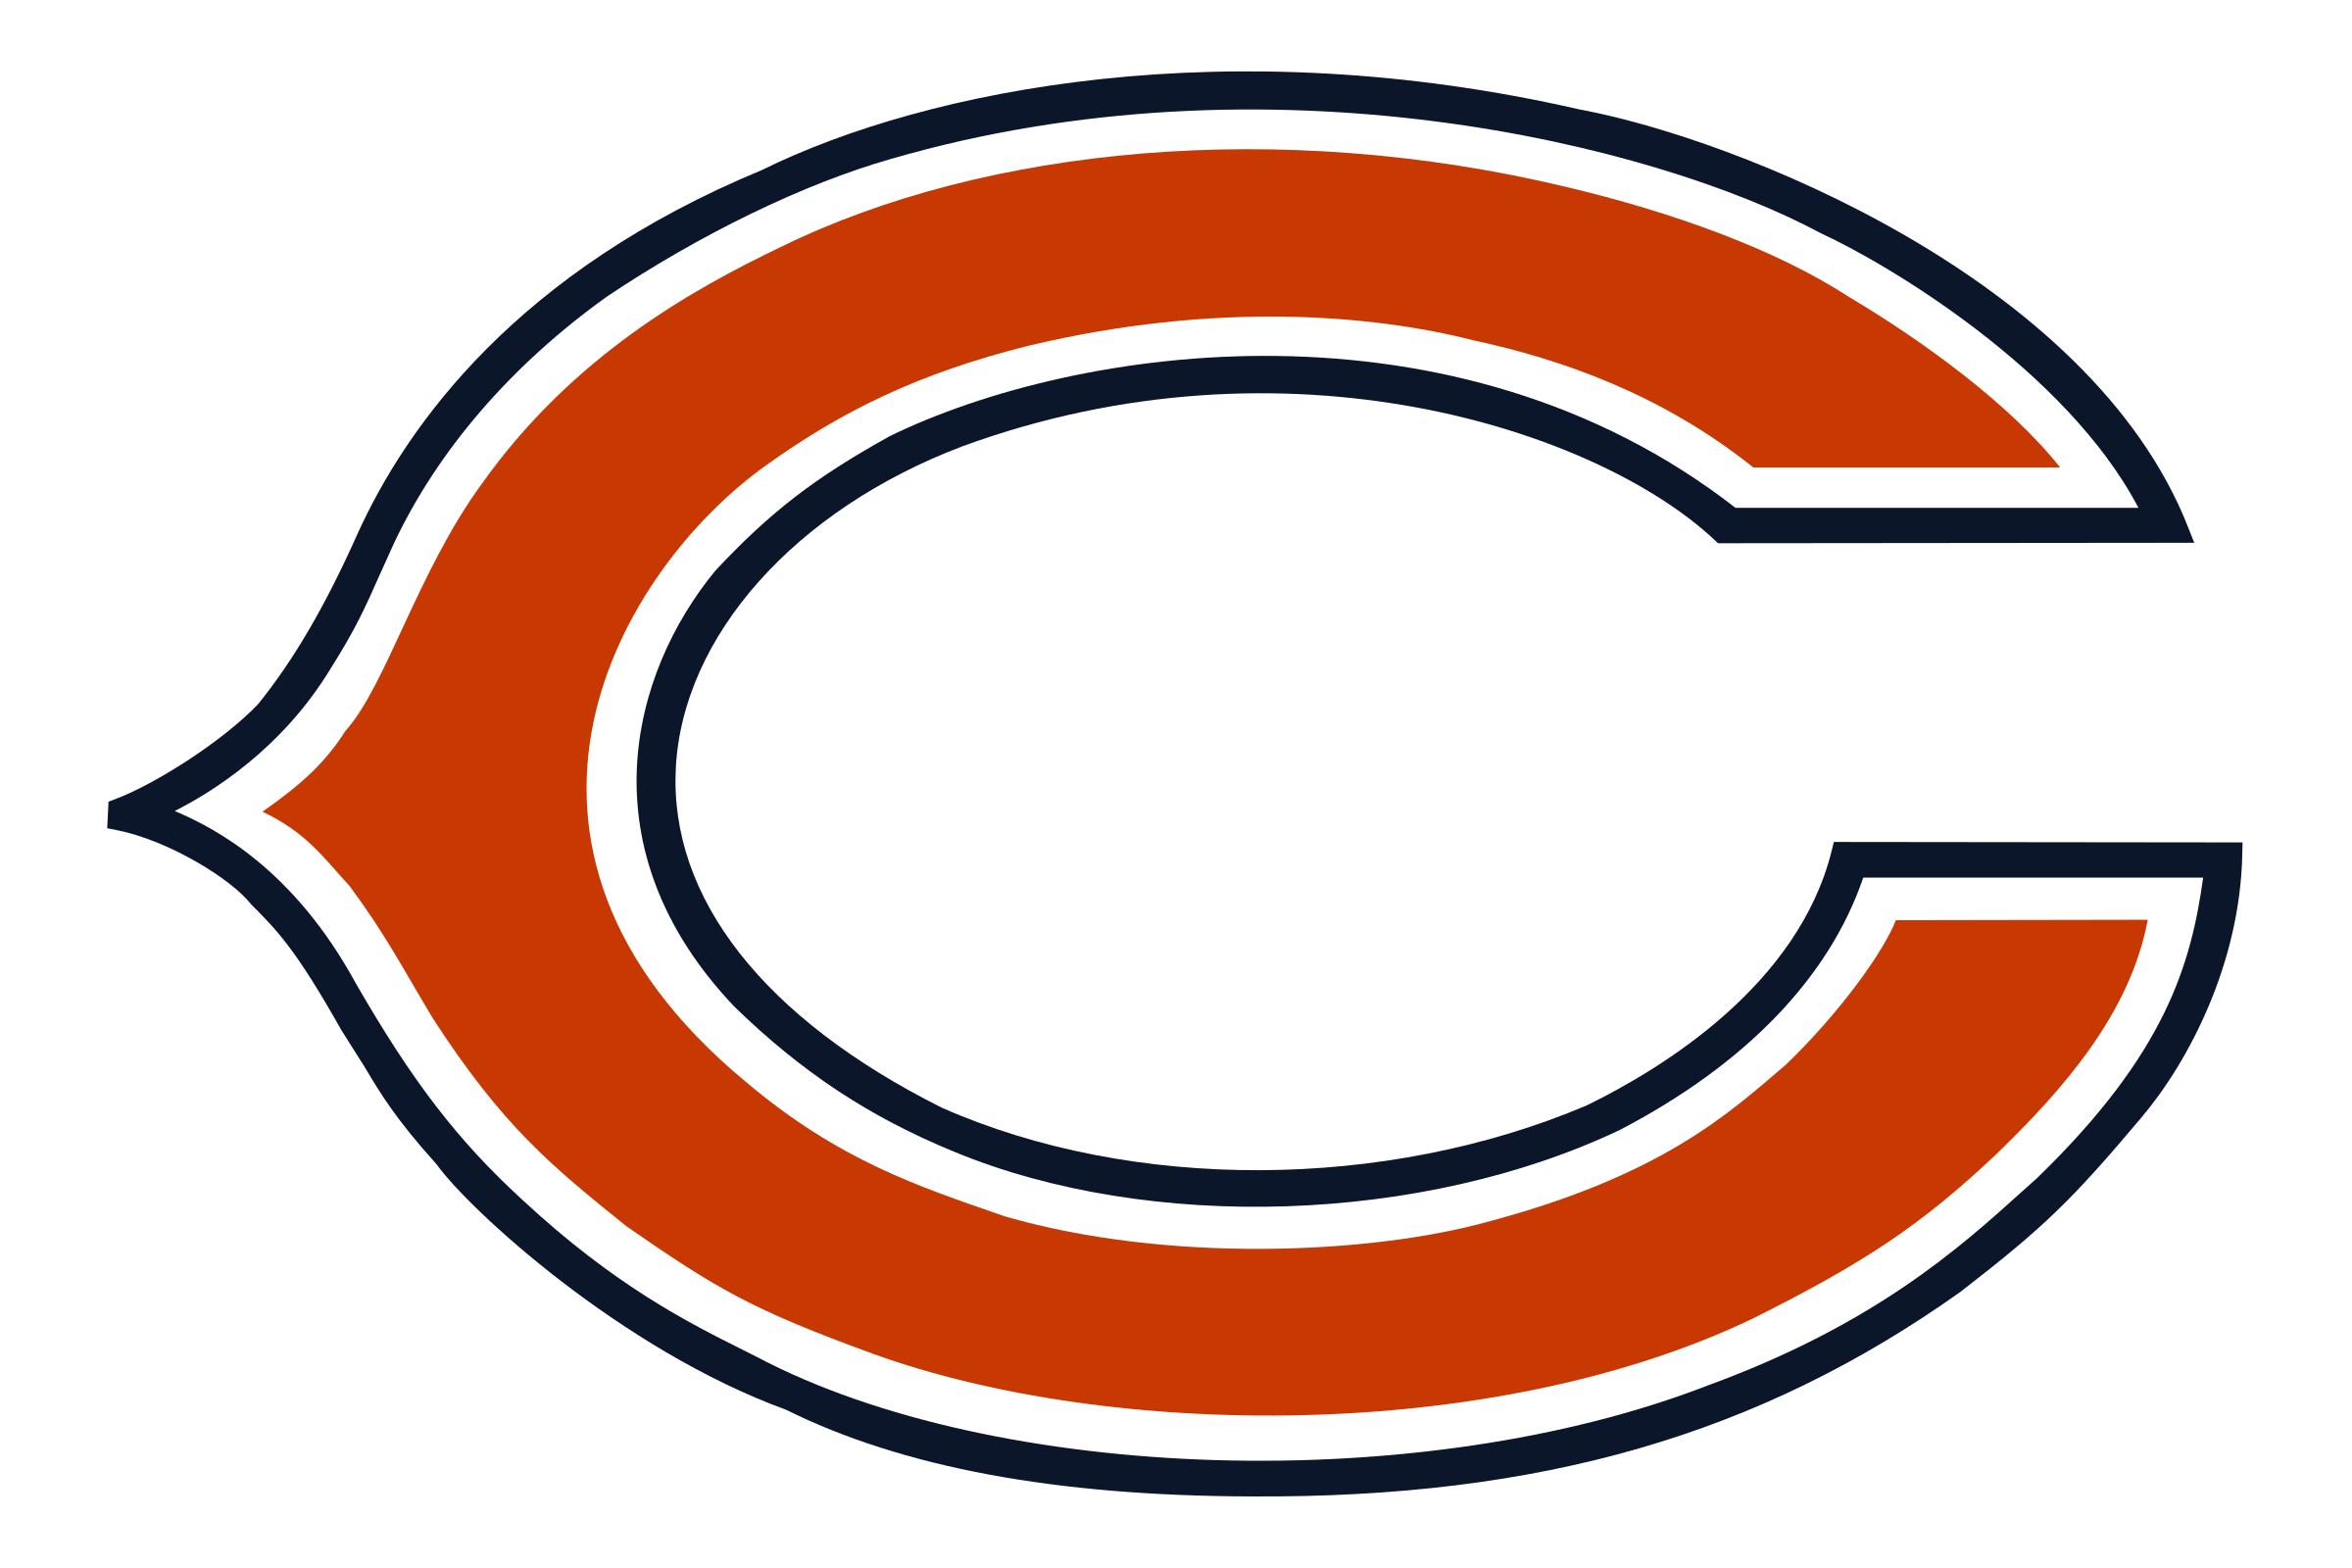 Chicago Bears Logos, Uniforms